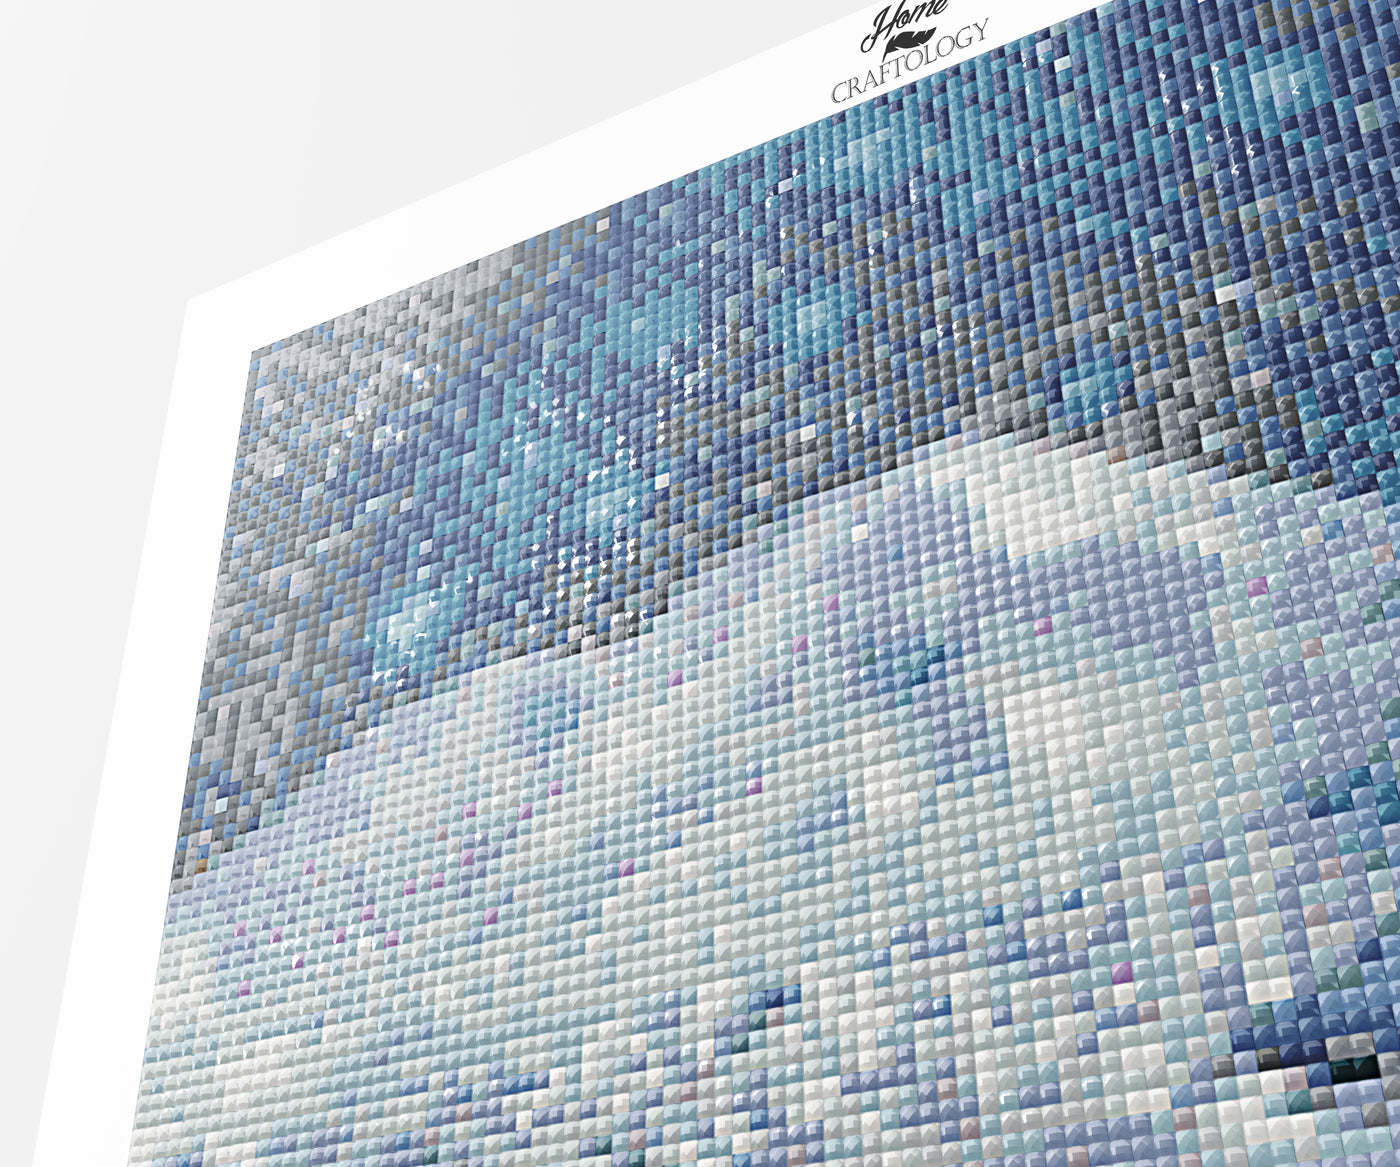 House with Snow Falling - Premium Diamond Painting Kit